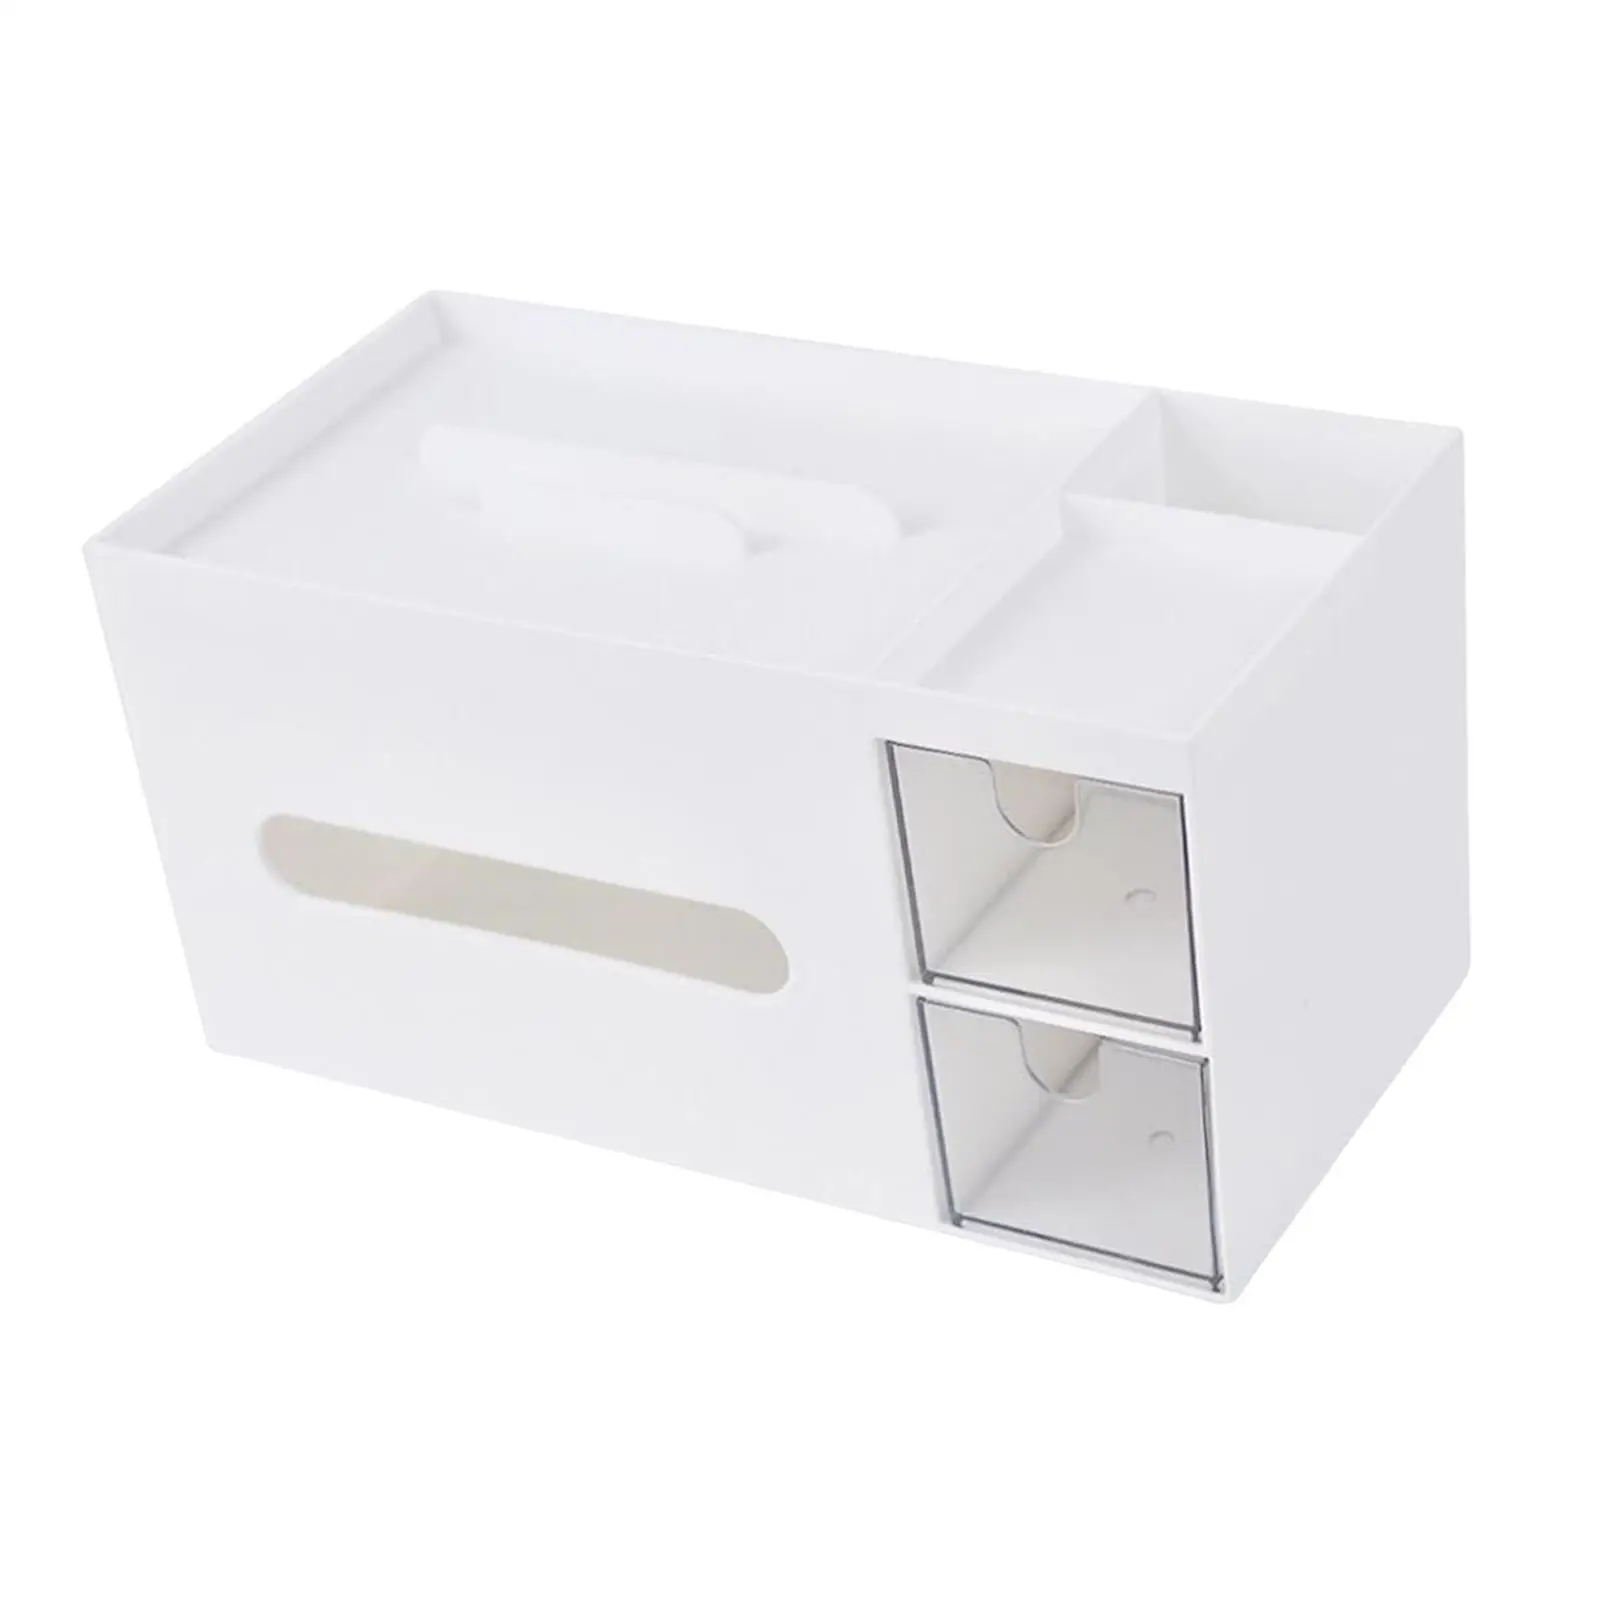 Tissue Box Holder with Phone Holder Tissue Dispenser Facial Tissue Holder Case for Office Table Home Bedroom Living Room